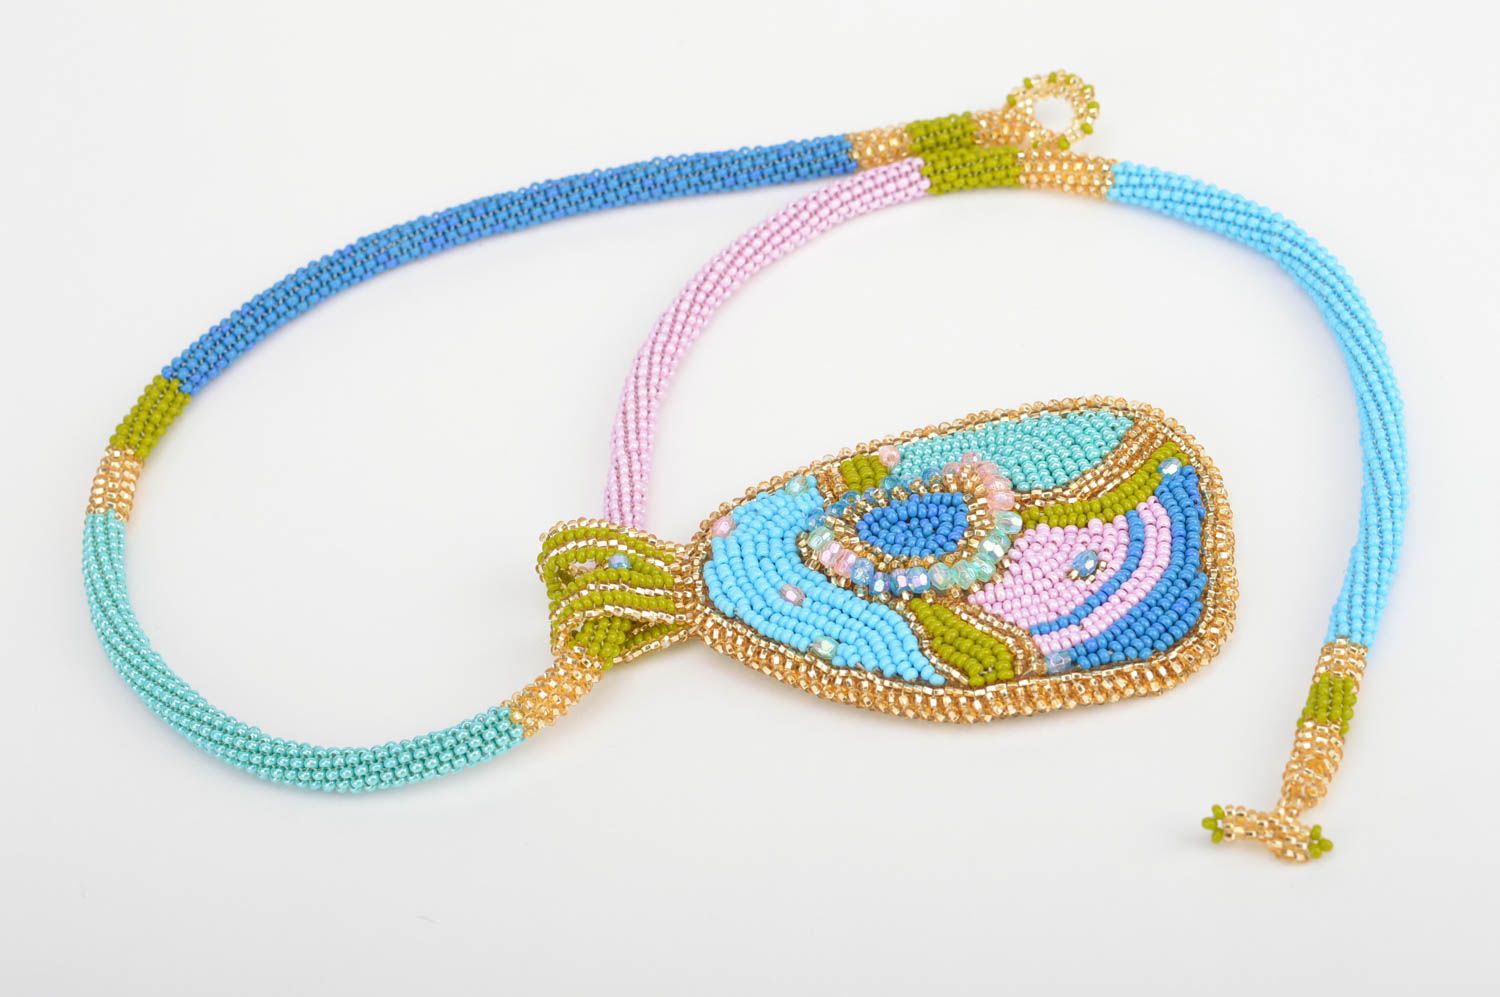 Ожерелье из бисера разноцветное с кулоном оригинальное красивое ручной работы фото 3